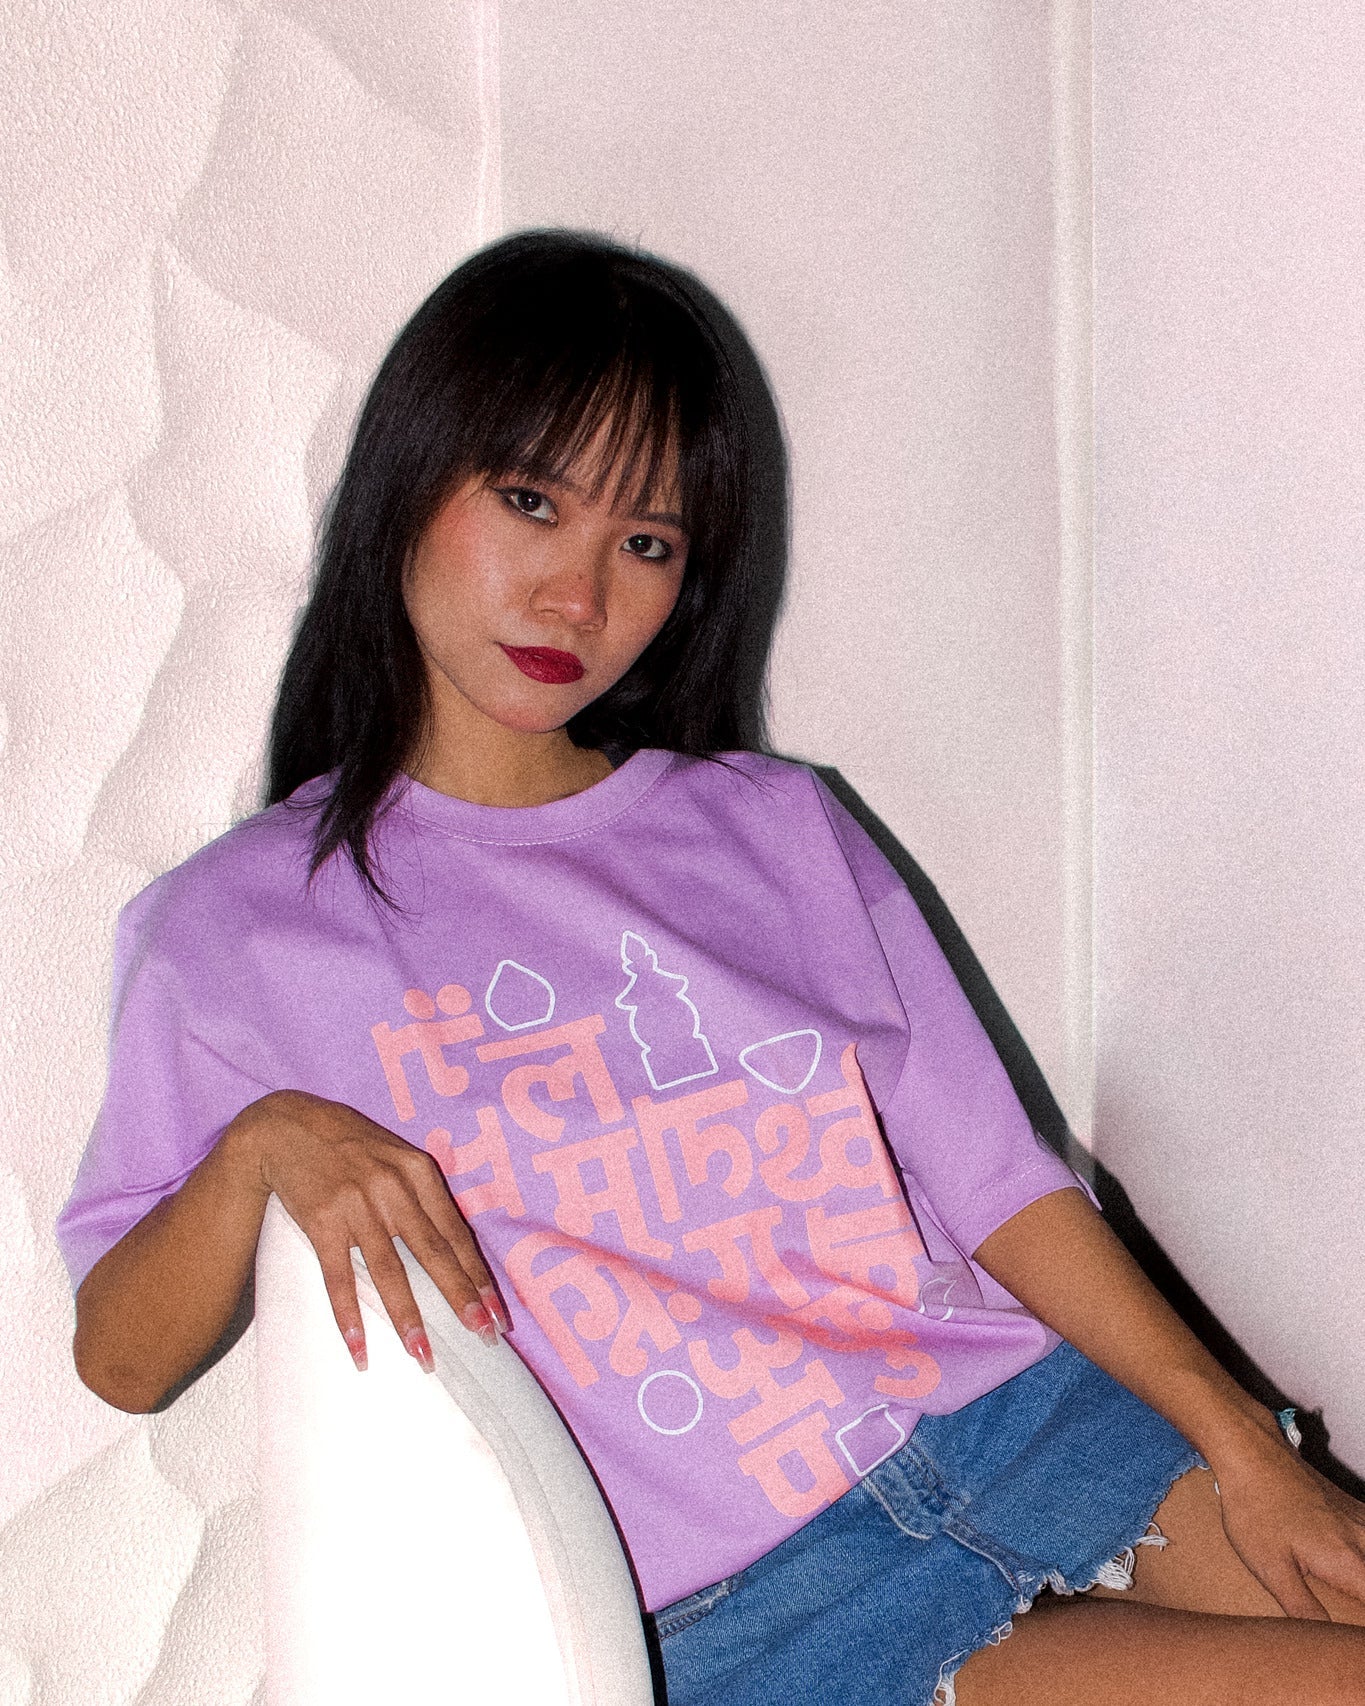 Lavender Byangoma T-Shirt - CiceroniT-Shirttsaku